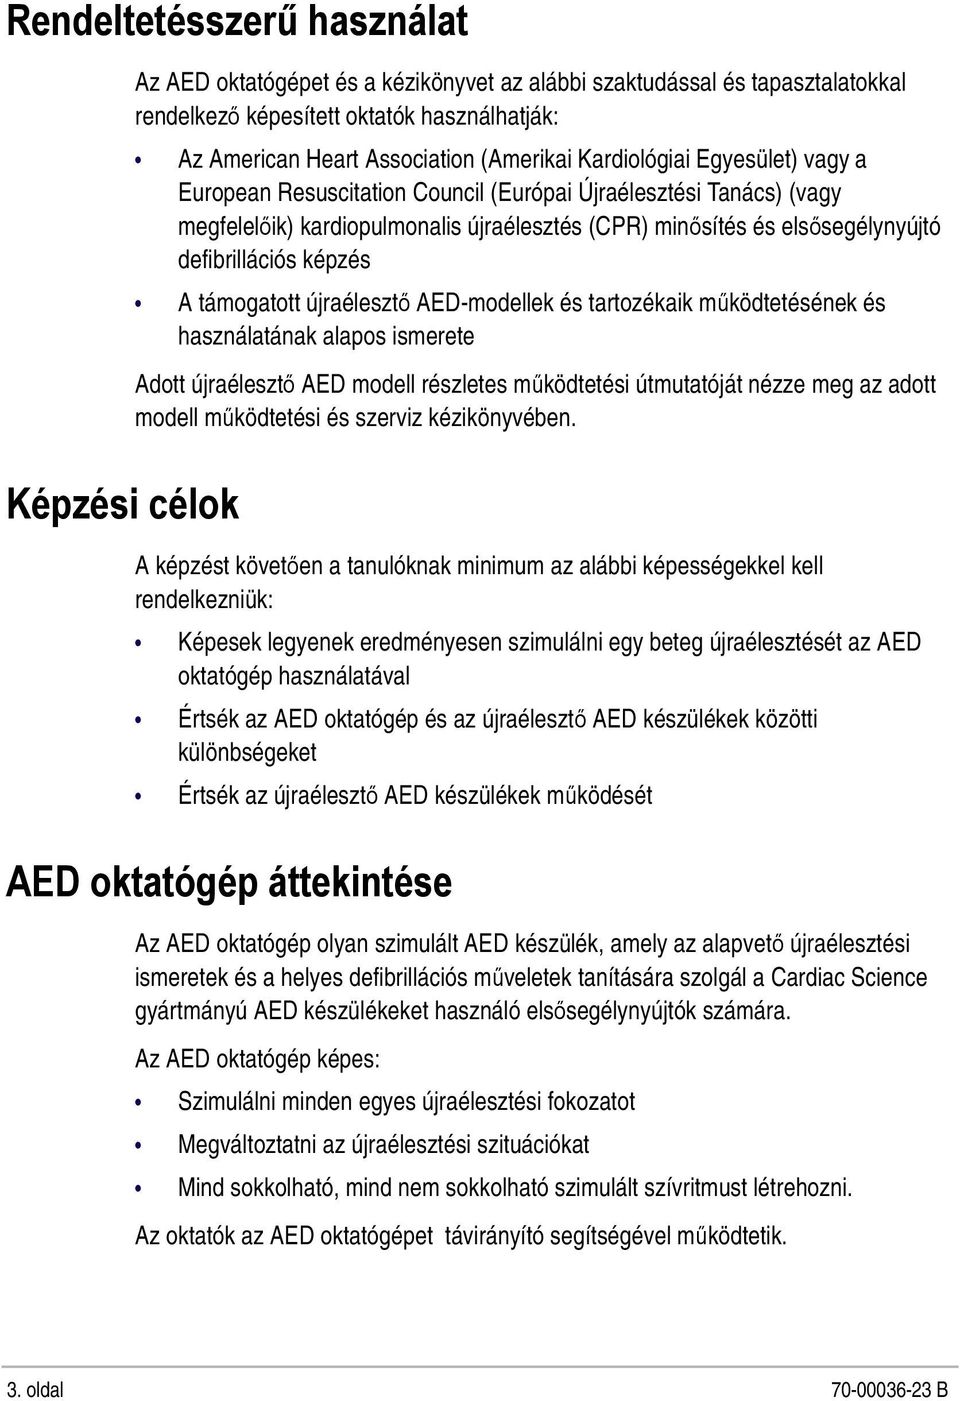 defibrillációs képzés A támogatott újraélesztő AED-modellek és tartozékaik működtetésének és használatának alapos ismerete Adott újraélesztő AED modell részletes működtetési útmutatóját nézze meg az